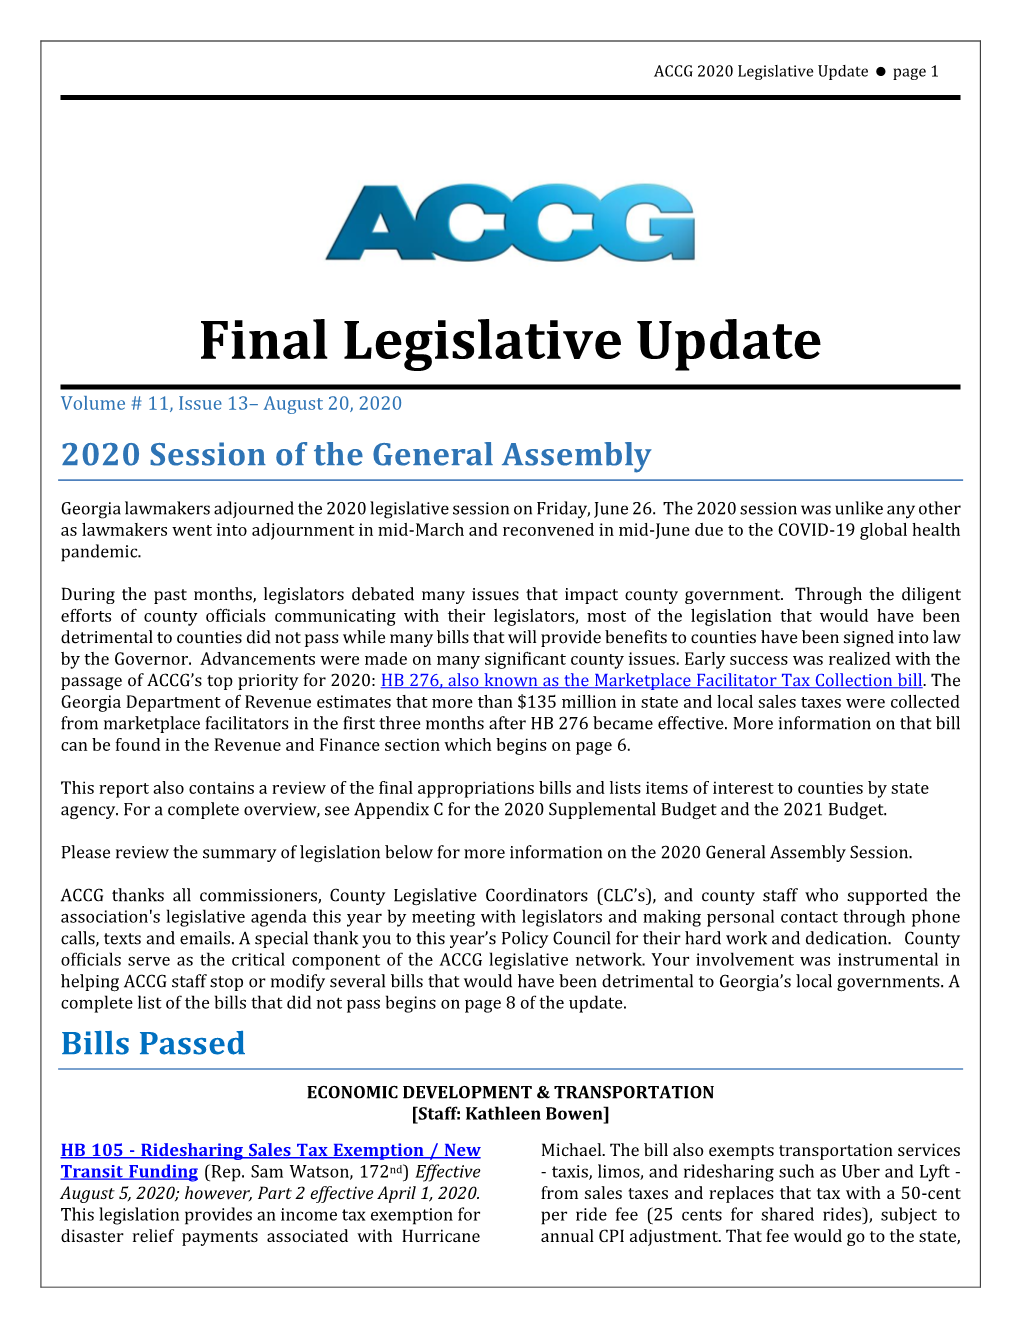 2020 Final Legislative Update